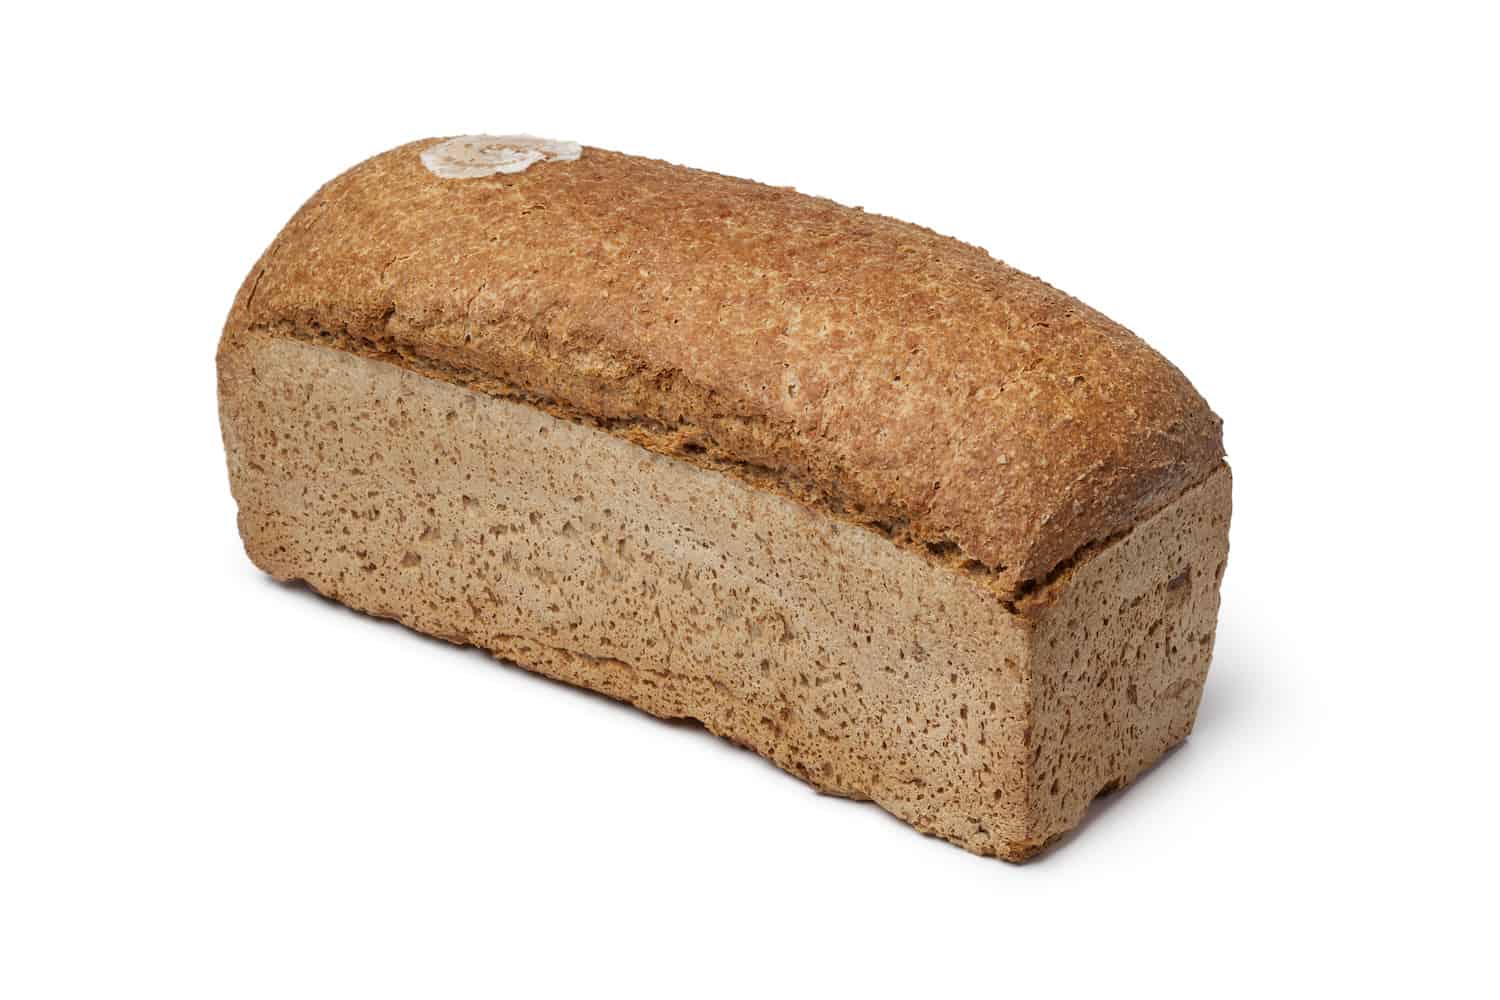 Coarse Whole Wheat Bread